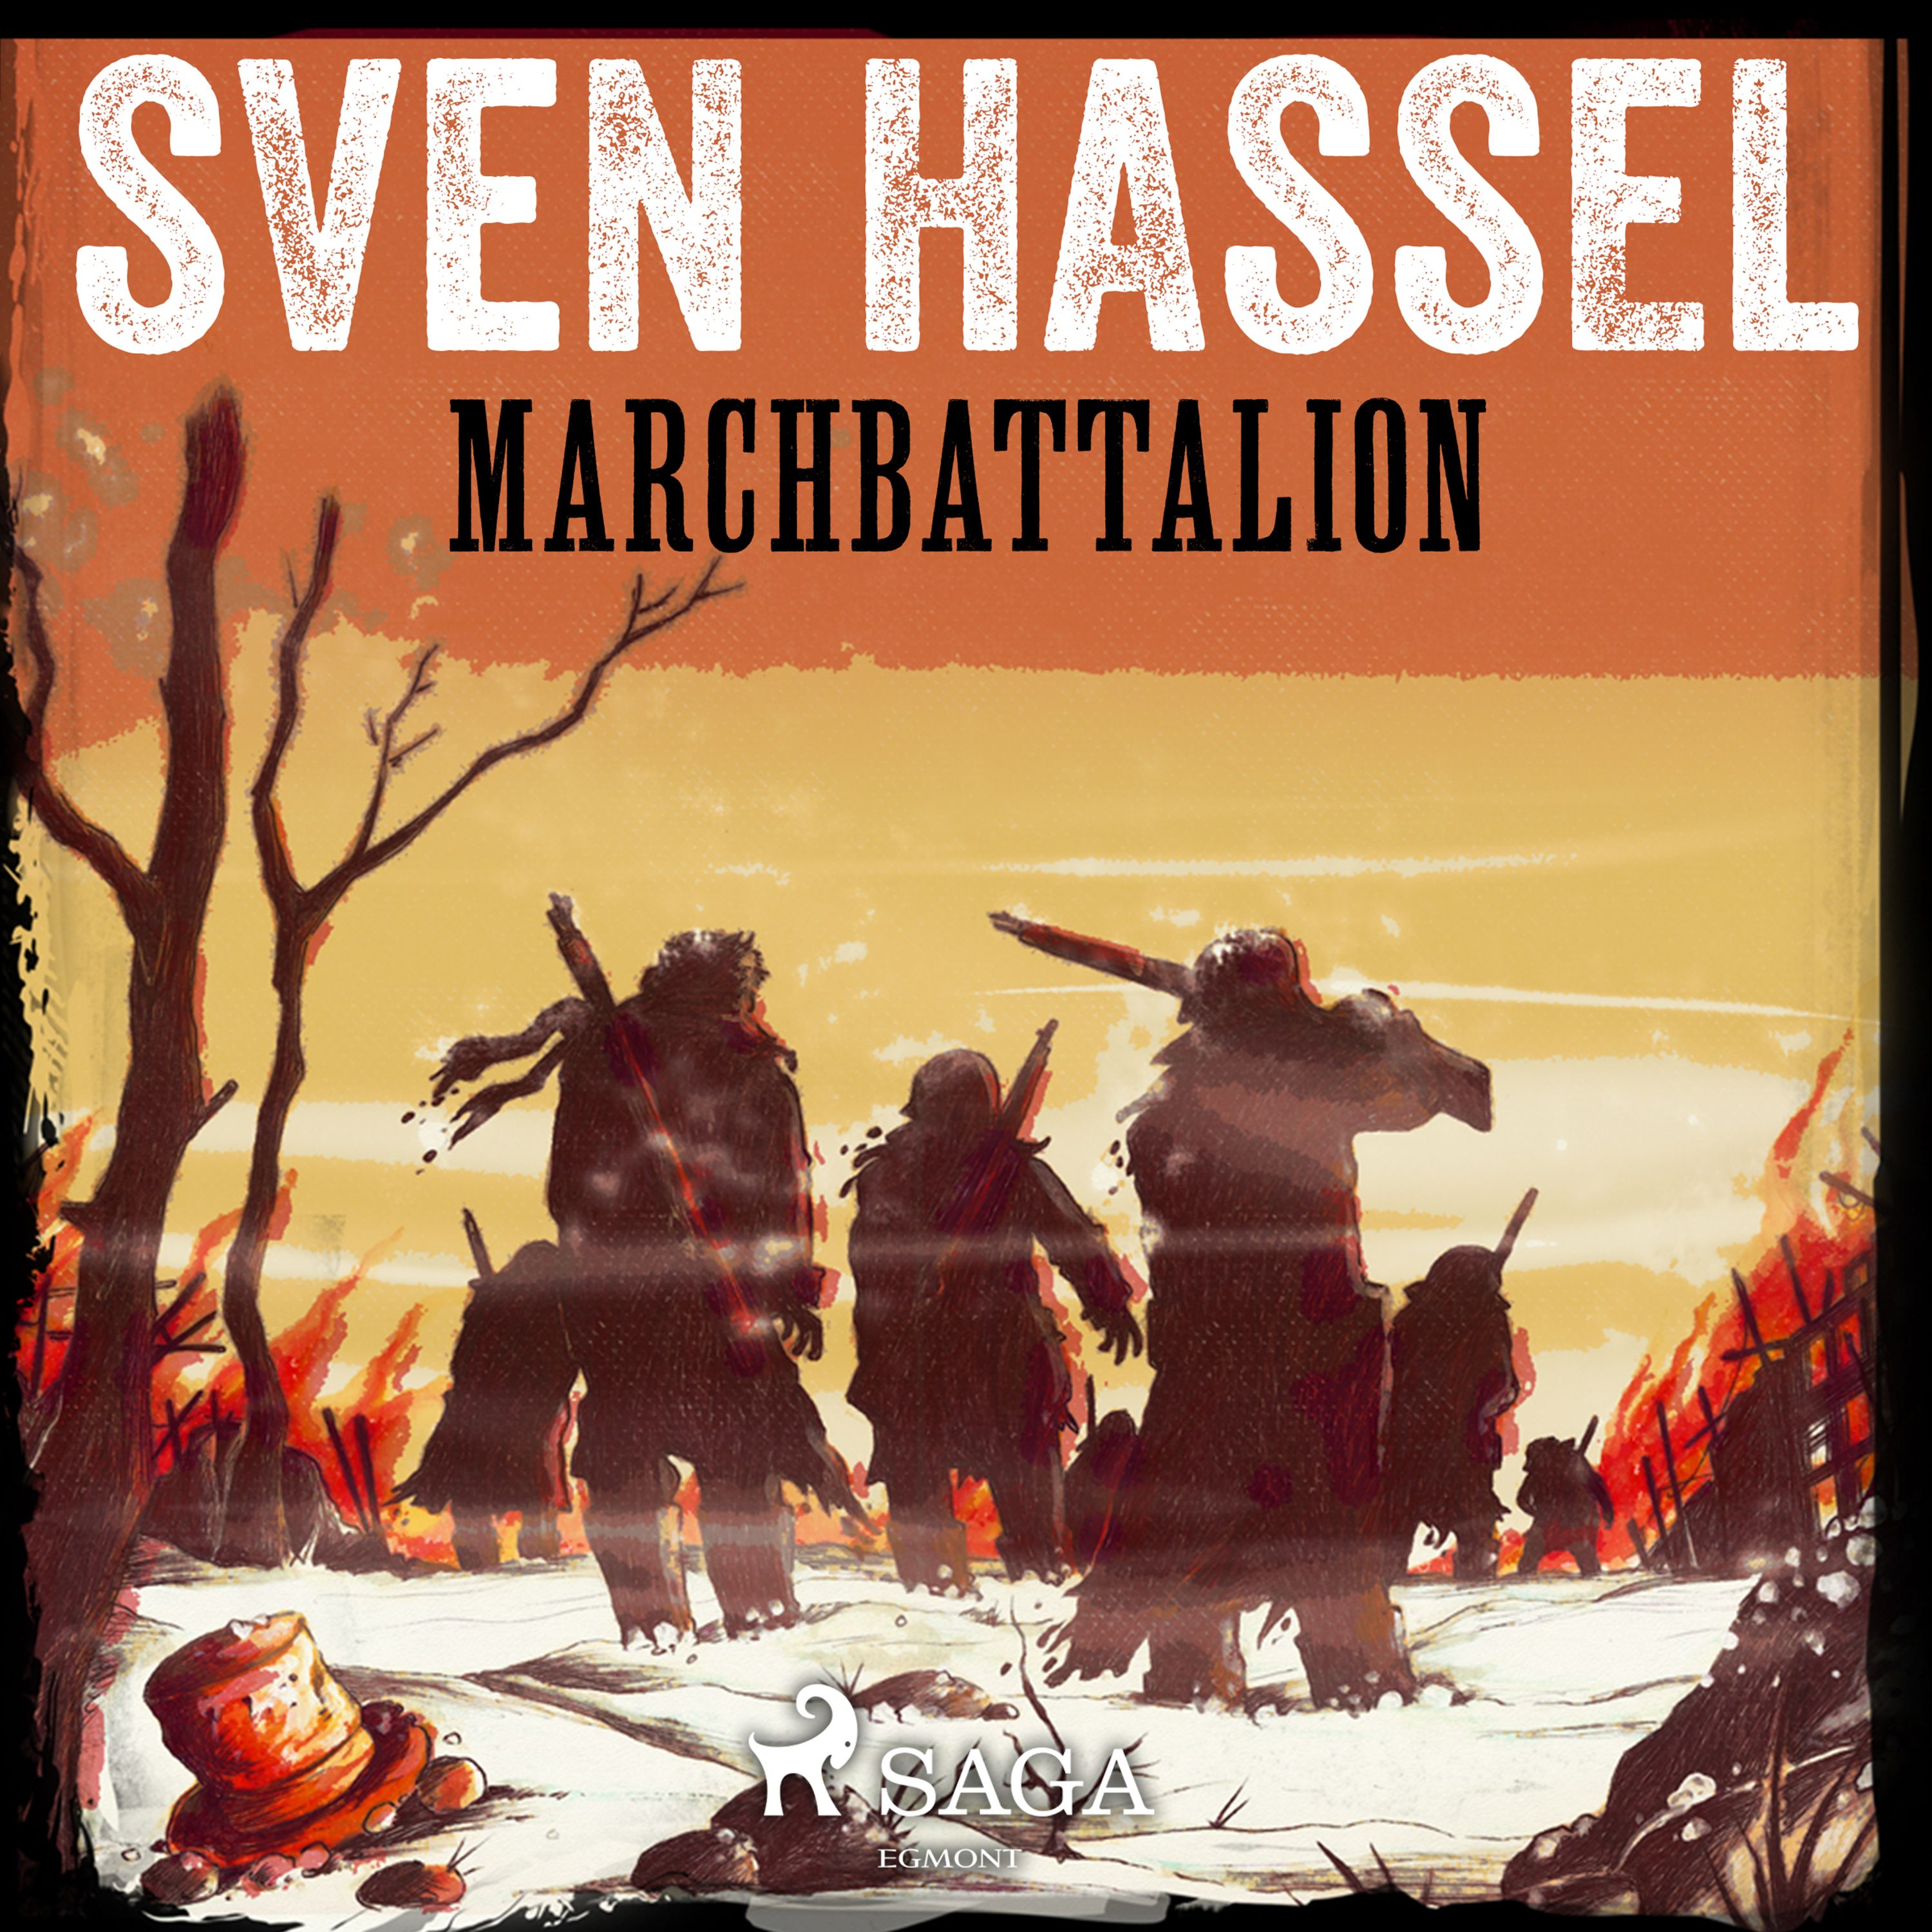 Marchbattalion, ljudbok av Sven Hassel